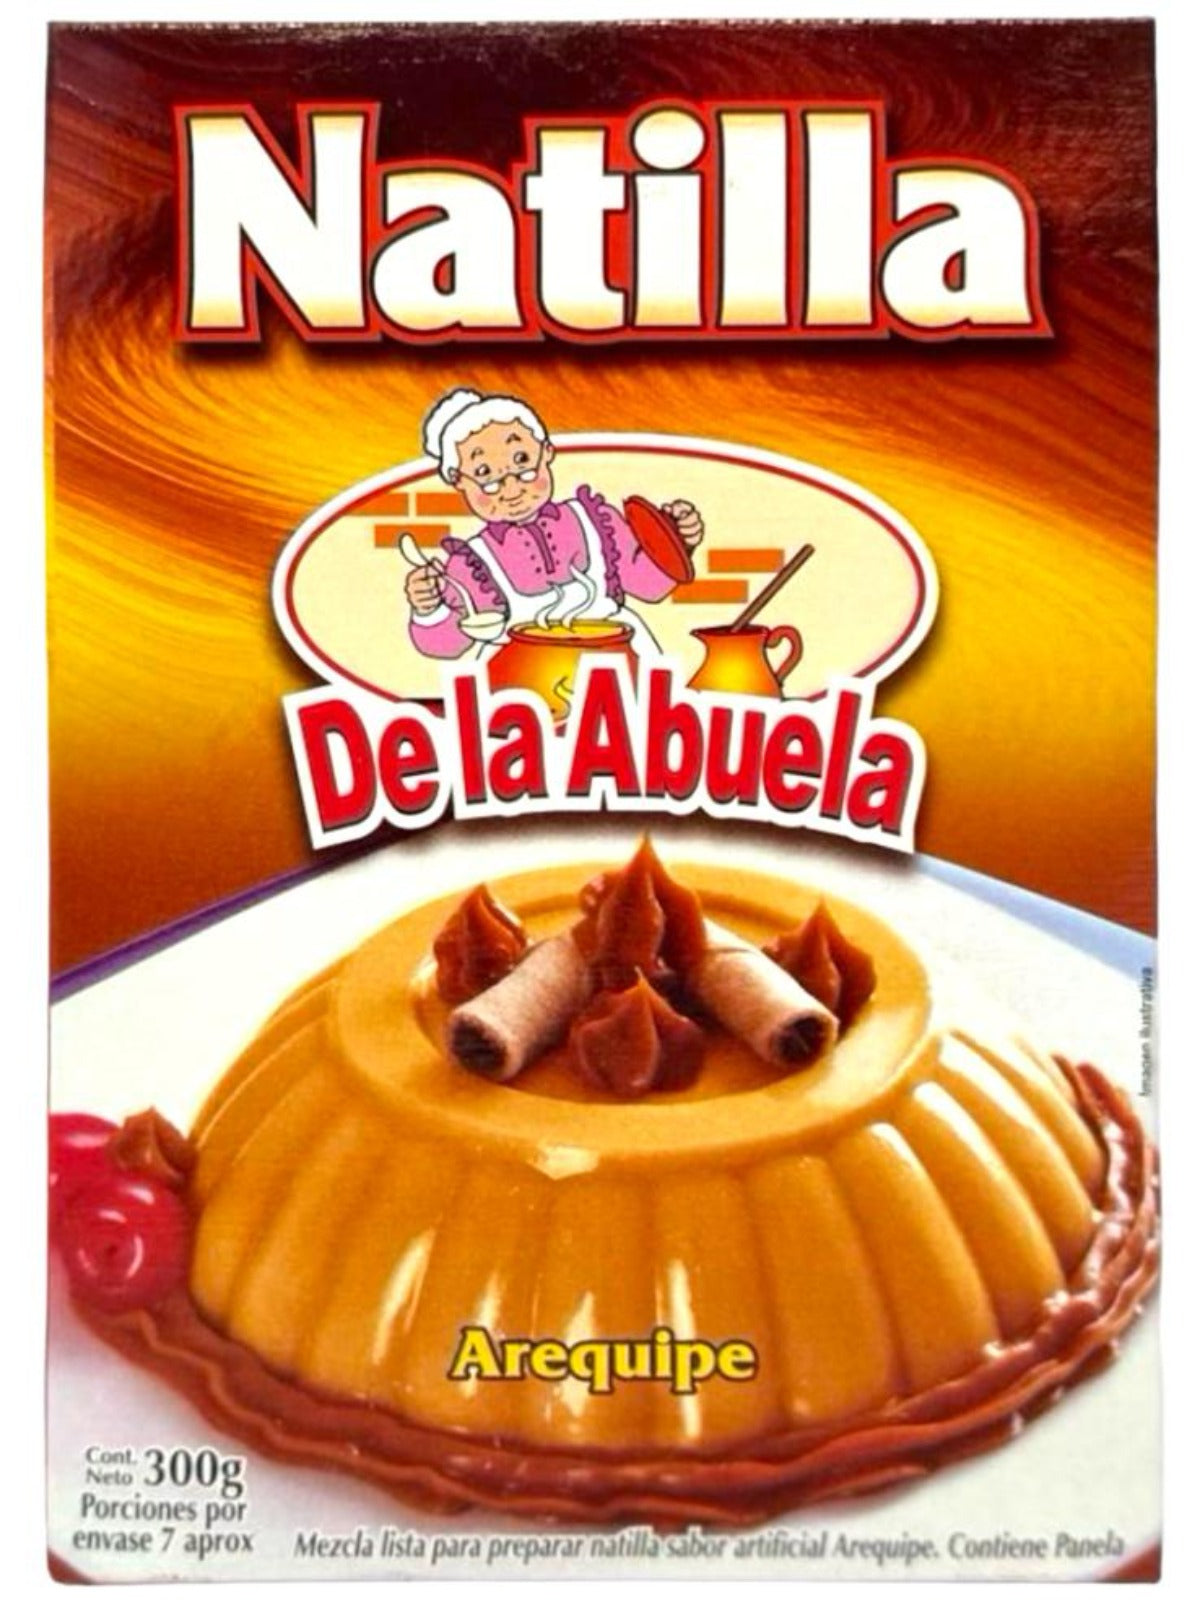 De la Abuela Natilla Arequipe Colombian Caramel Pudding 300g